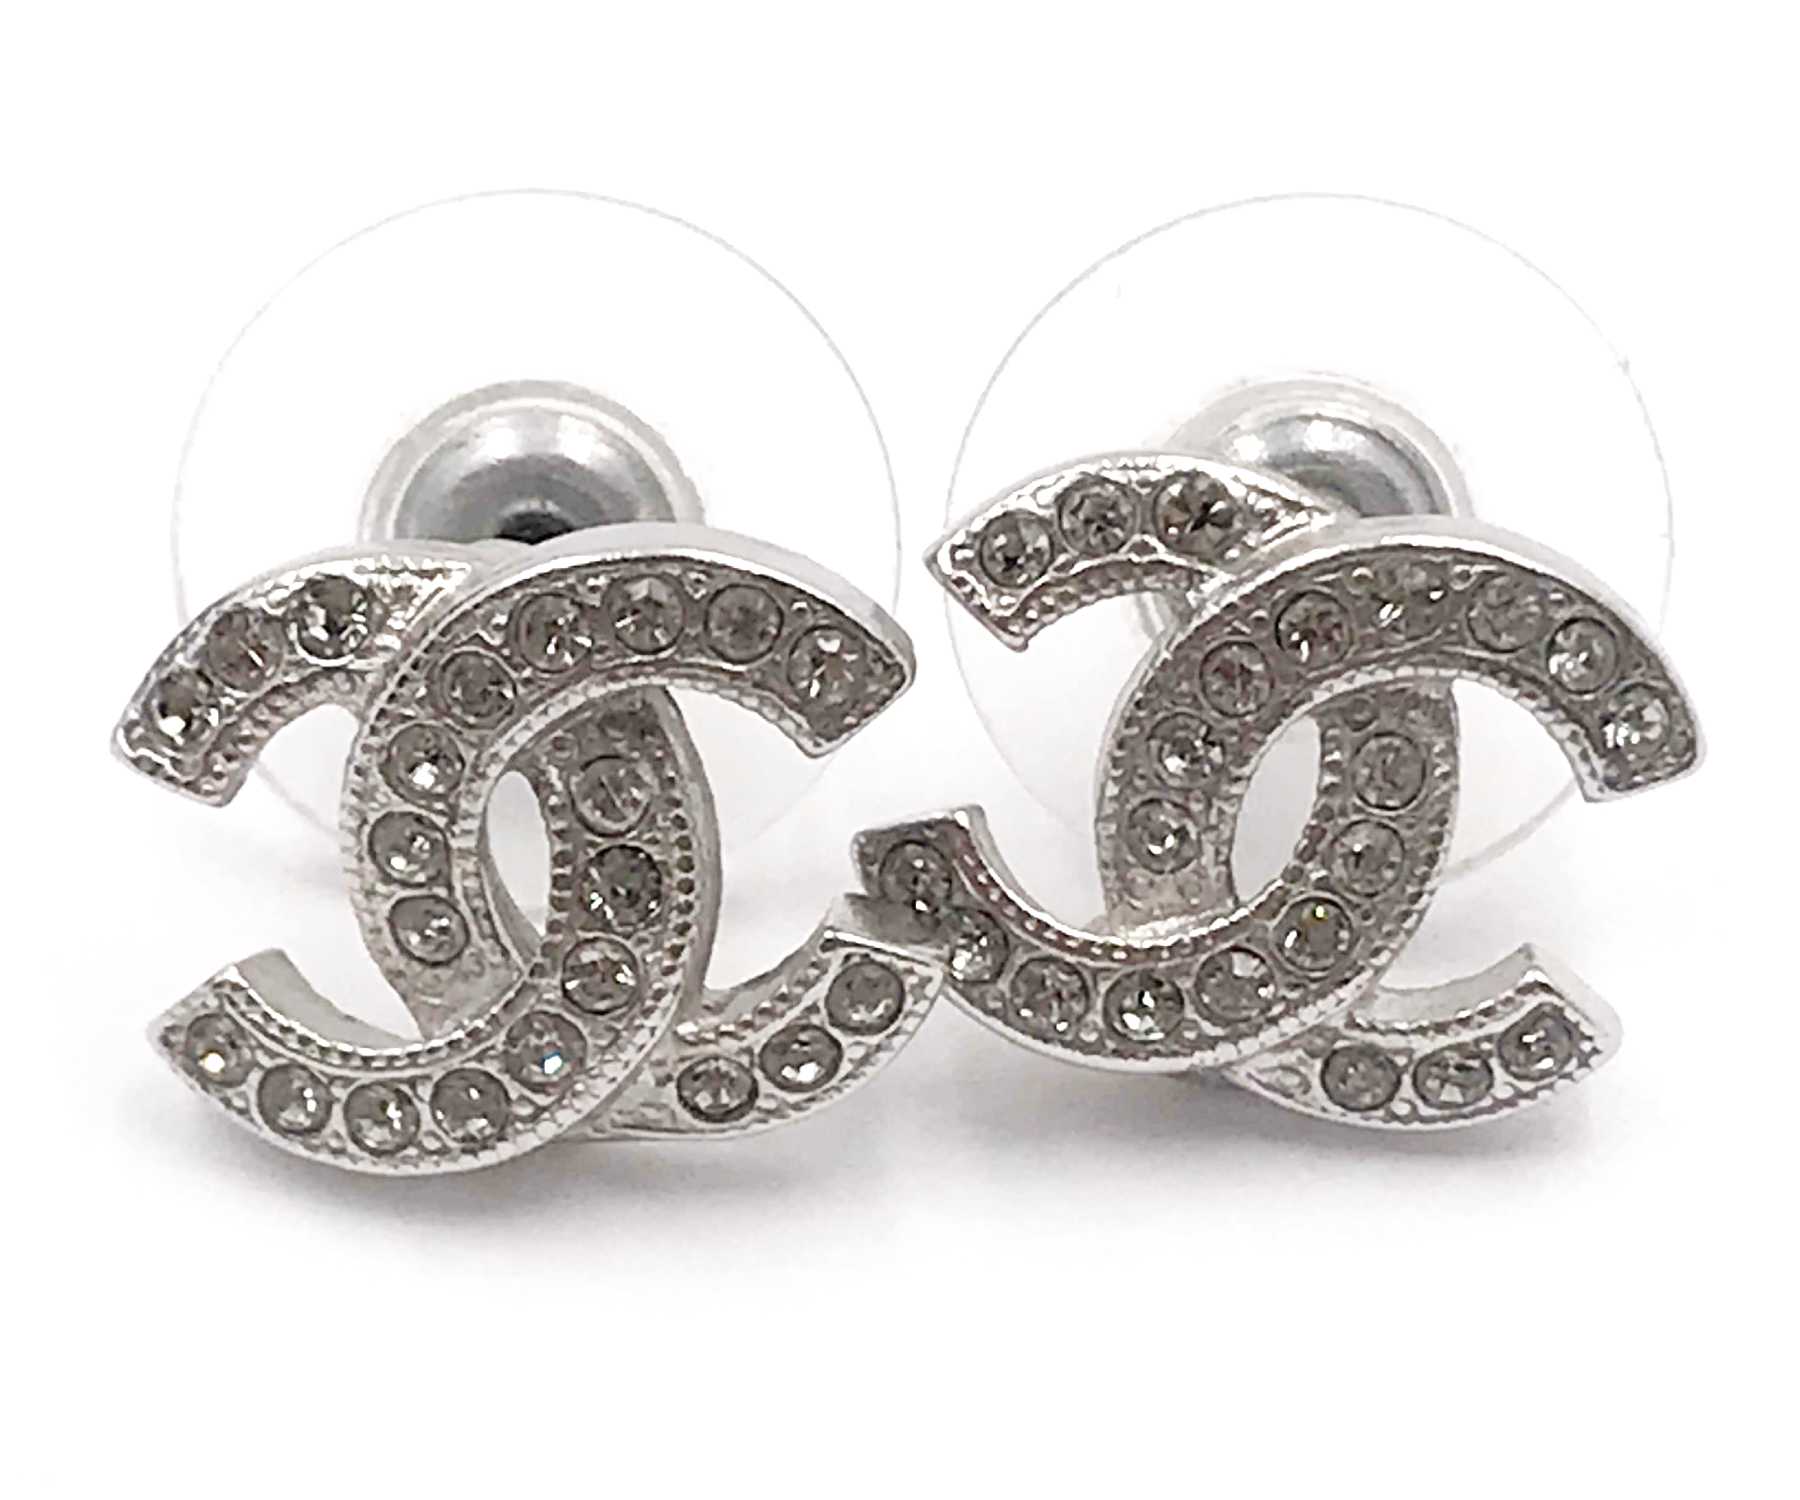 cc chanel earrings silver